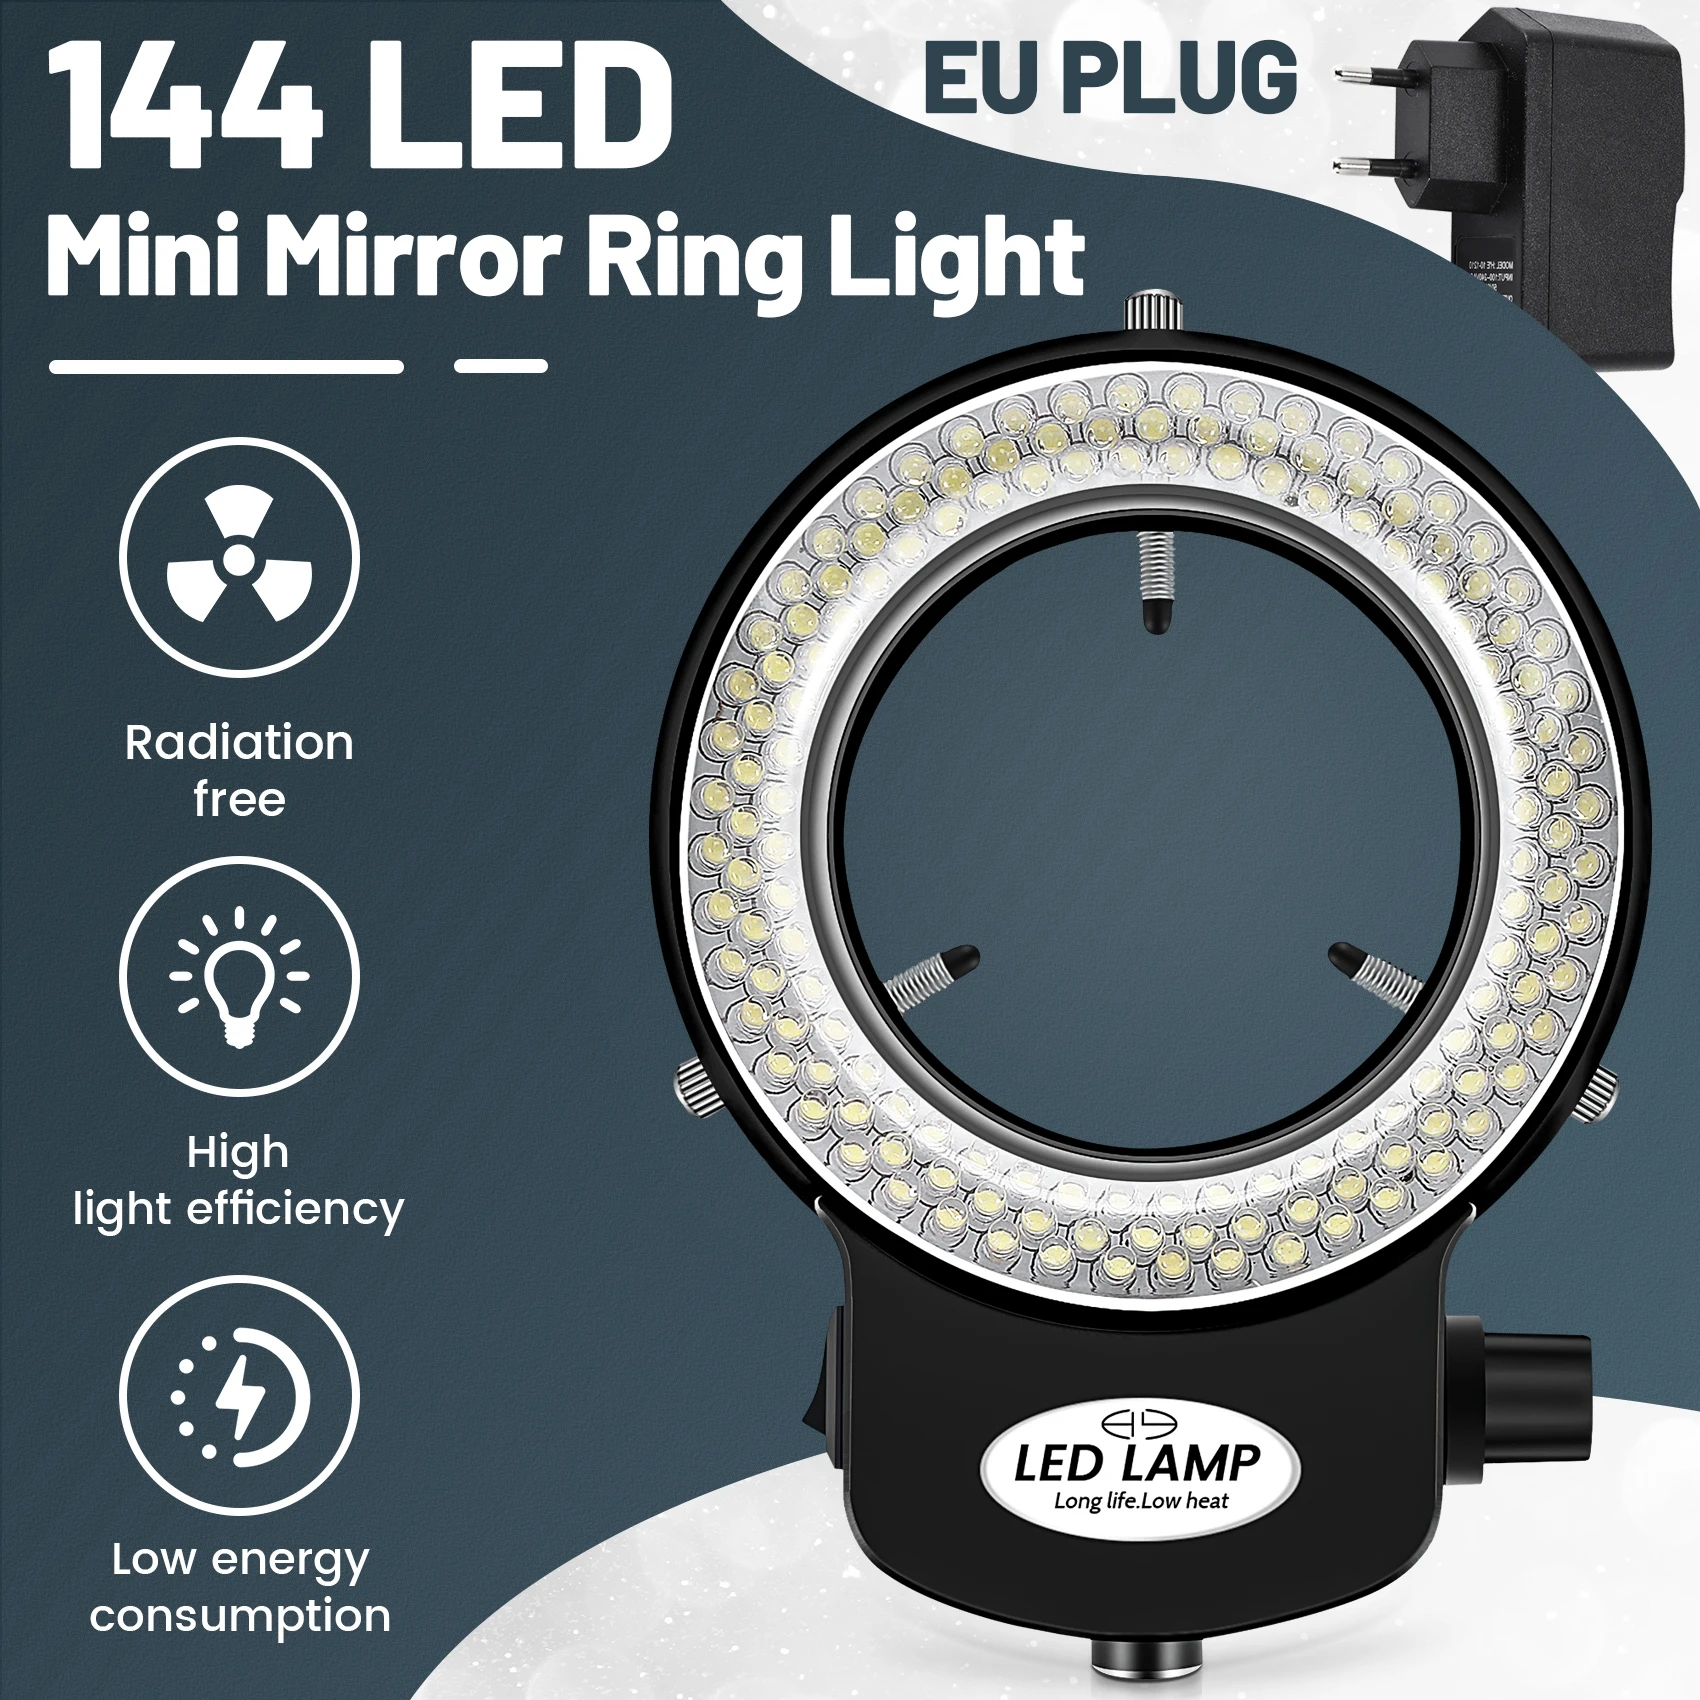 144 LED miniszkóp gyűrű fény gyűrű fény 0 - 100% állítható lámpa miniszkóp gyűrűfényhez - 4